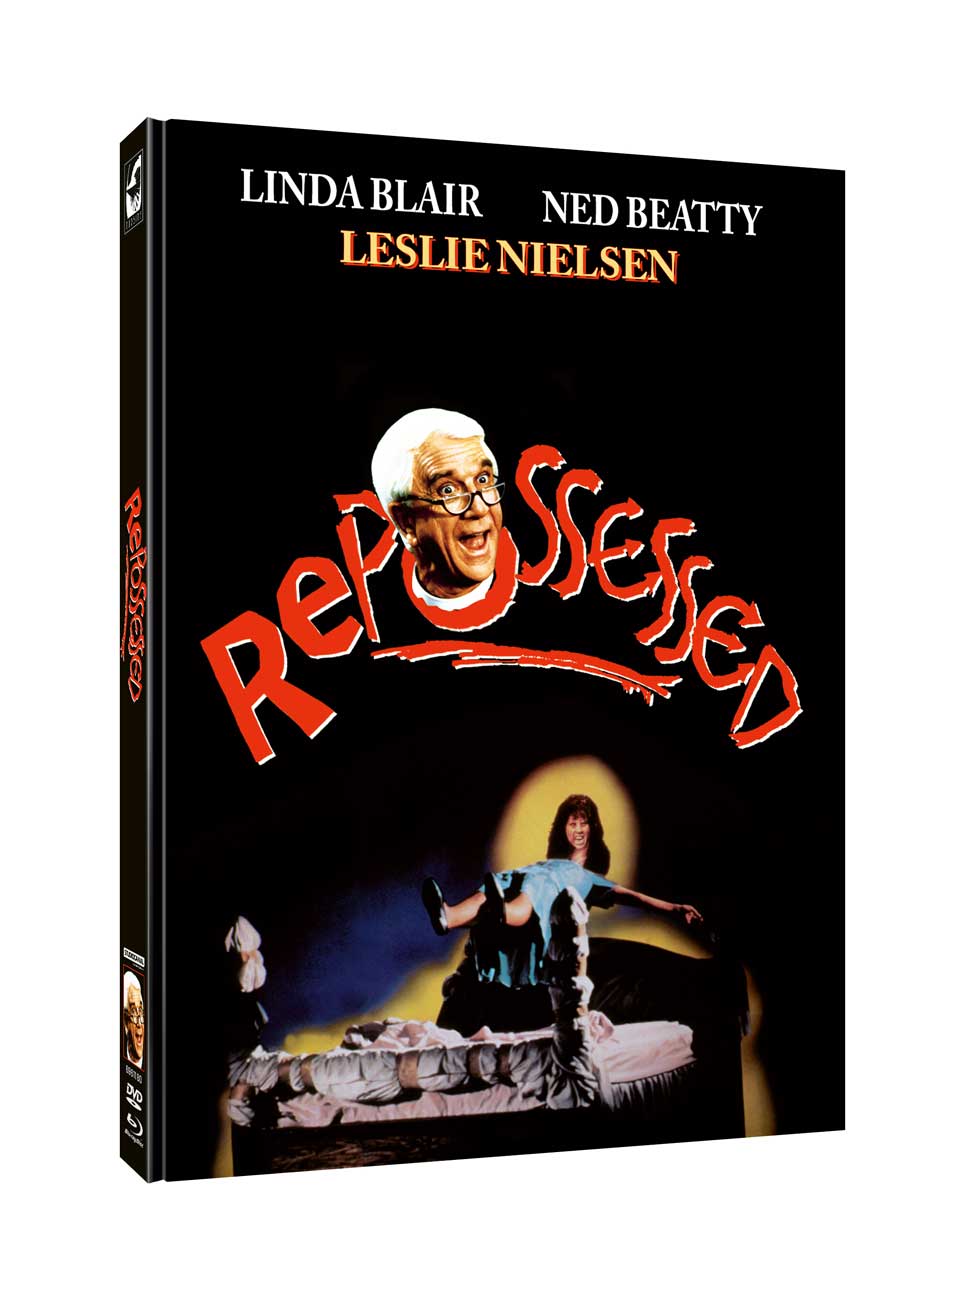 Von allen Geistern besessen - Repossessed | Mediabook (Blu-ray + DVD) Cover D - 250 Stück